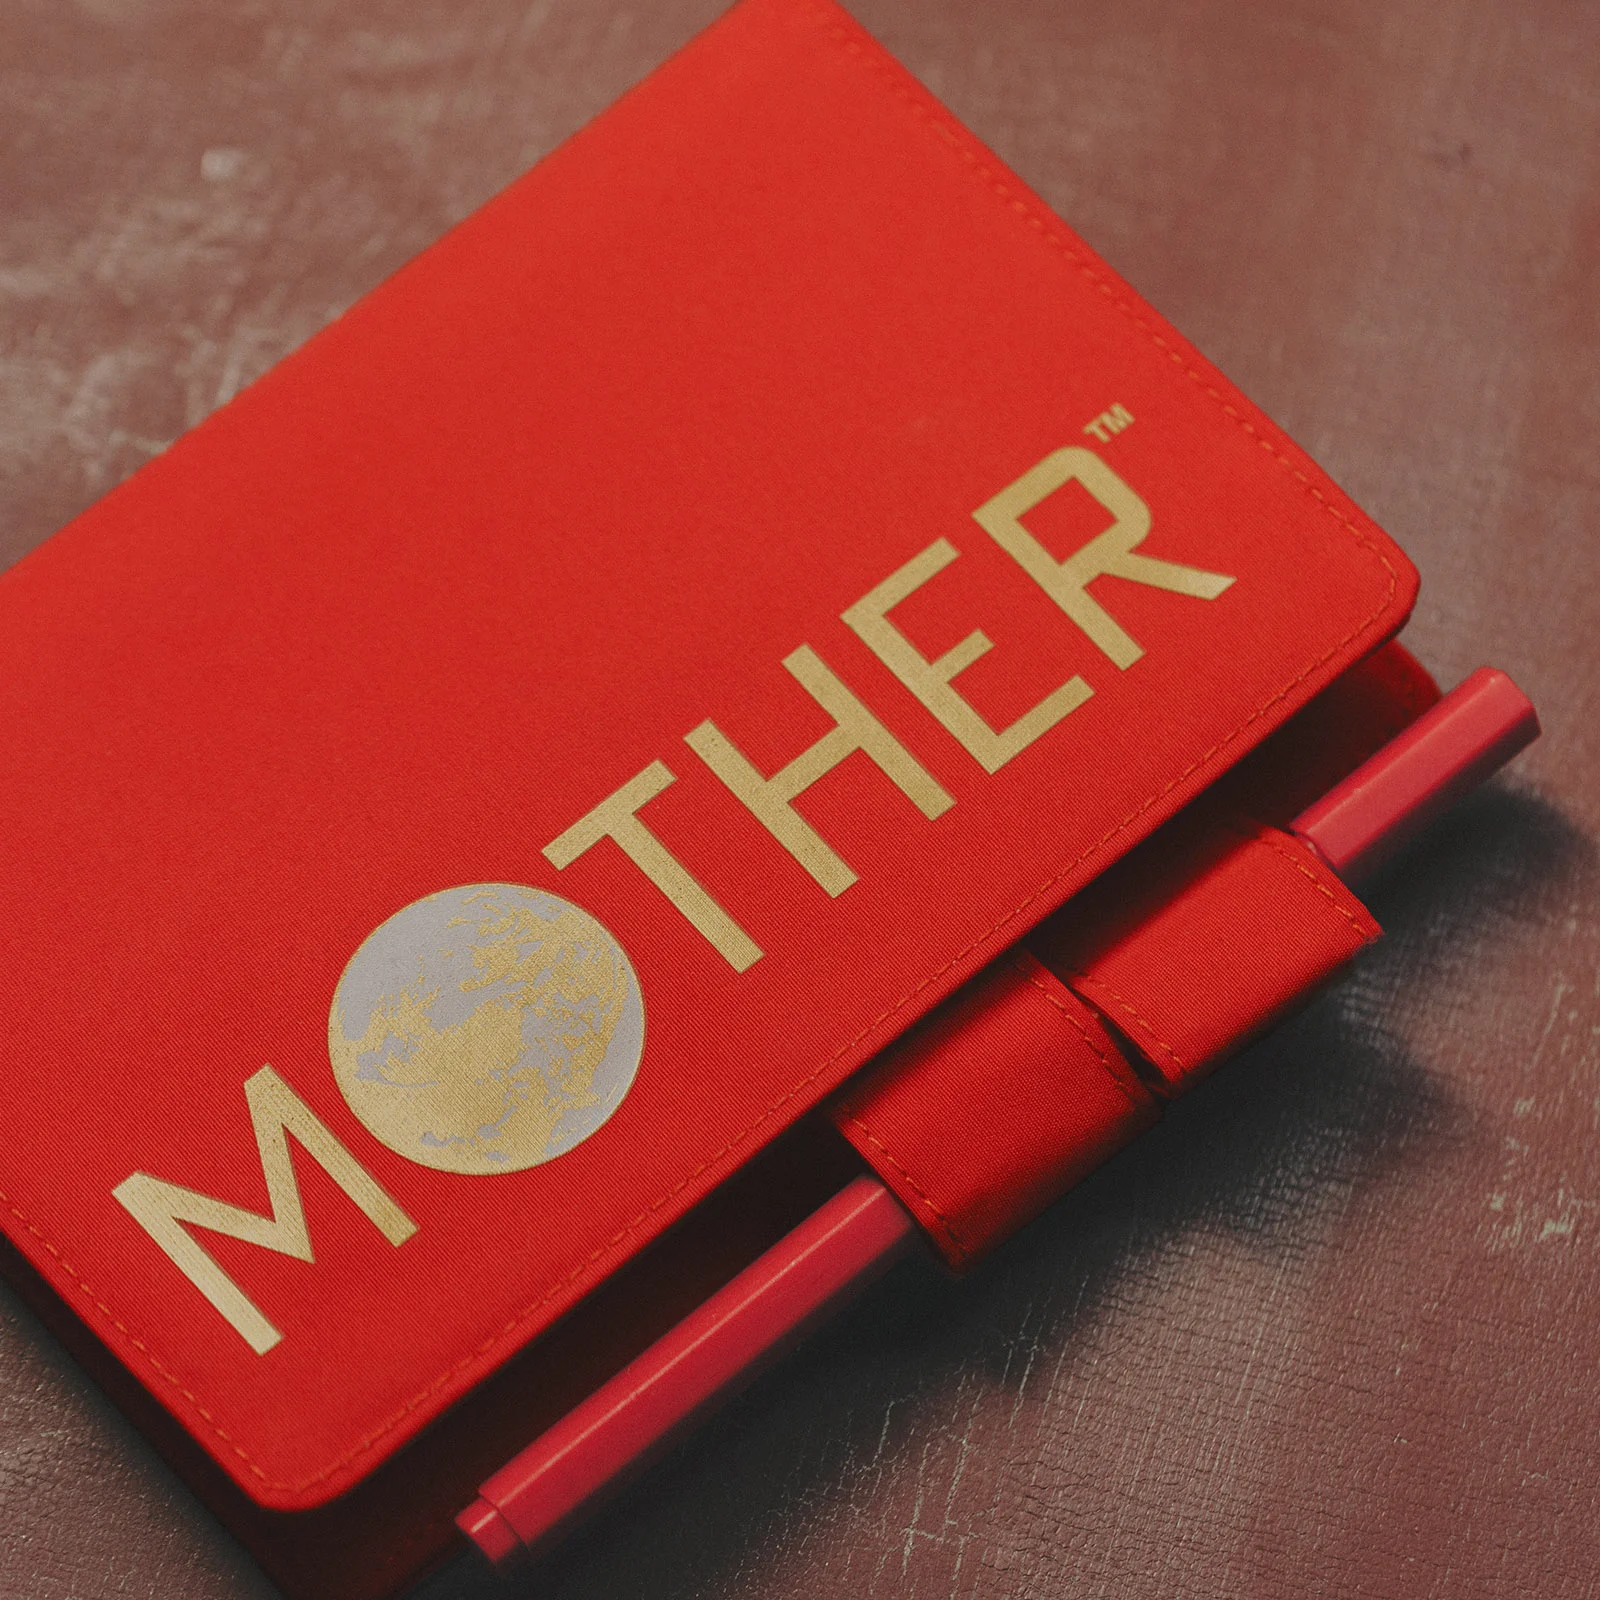 「ほぼ日MOTHERプロジェクト」：糸井重里がつくった『MOTHER』シリーズのことばをすべて収録した本の発売に合わせて起ち上がったプロジェクト。『MOTHER』にまつわるさまざまなコンテンツや商品をつくっています。